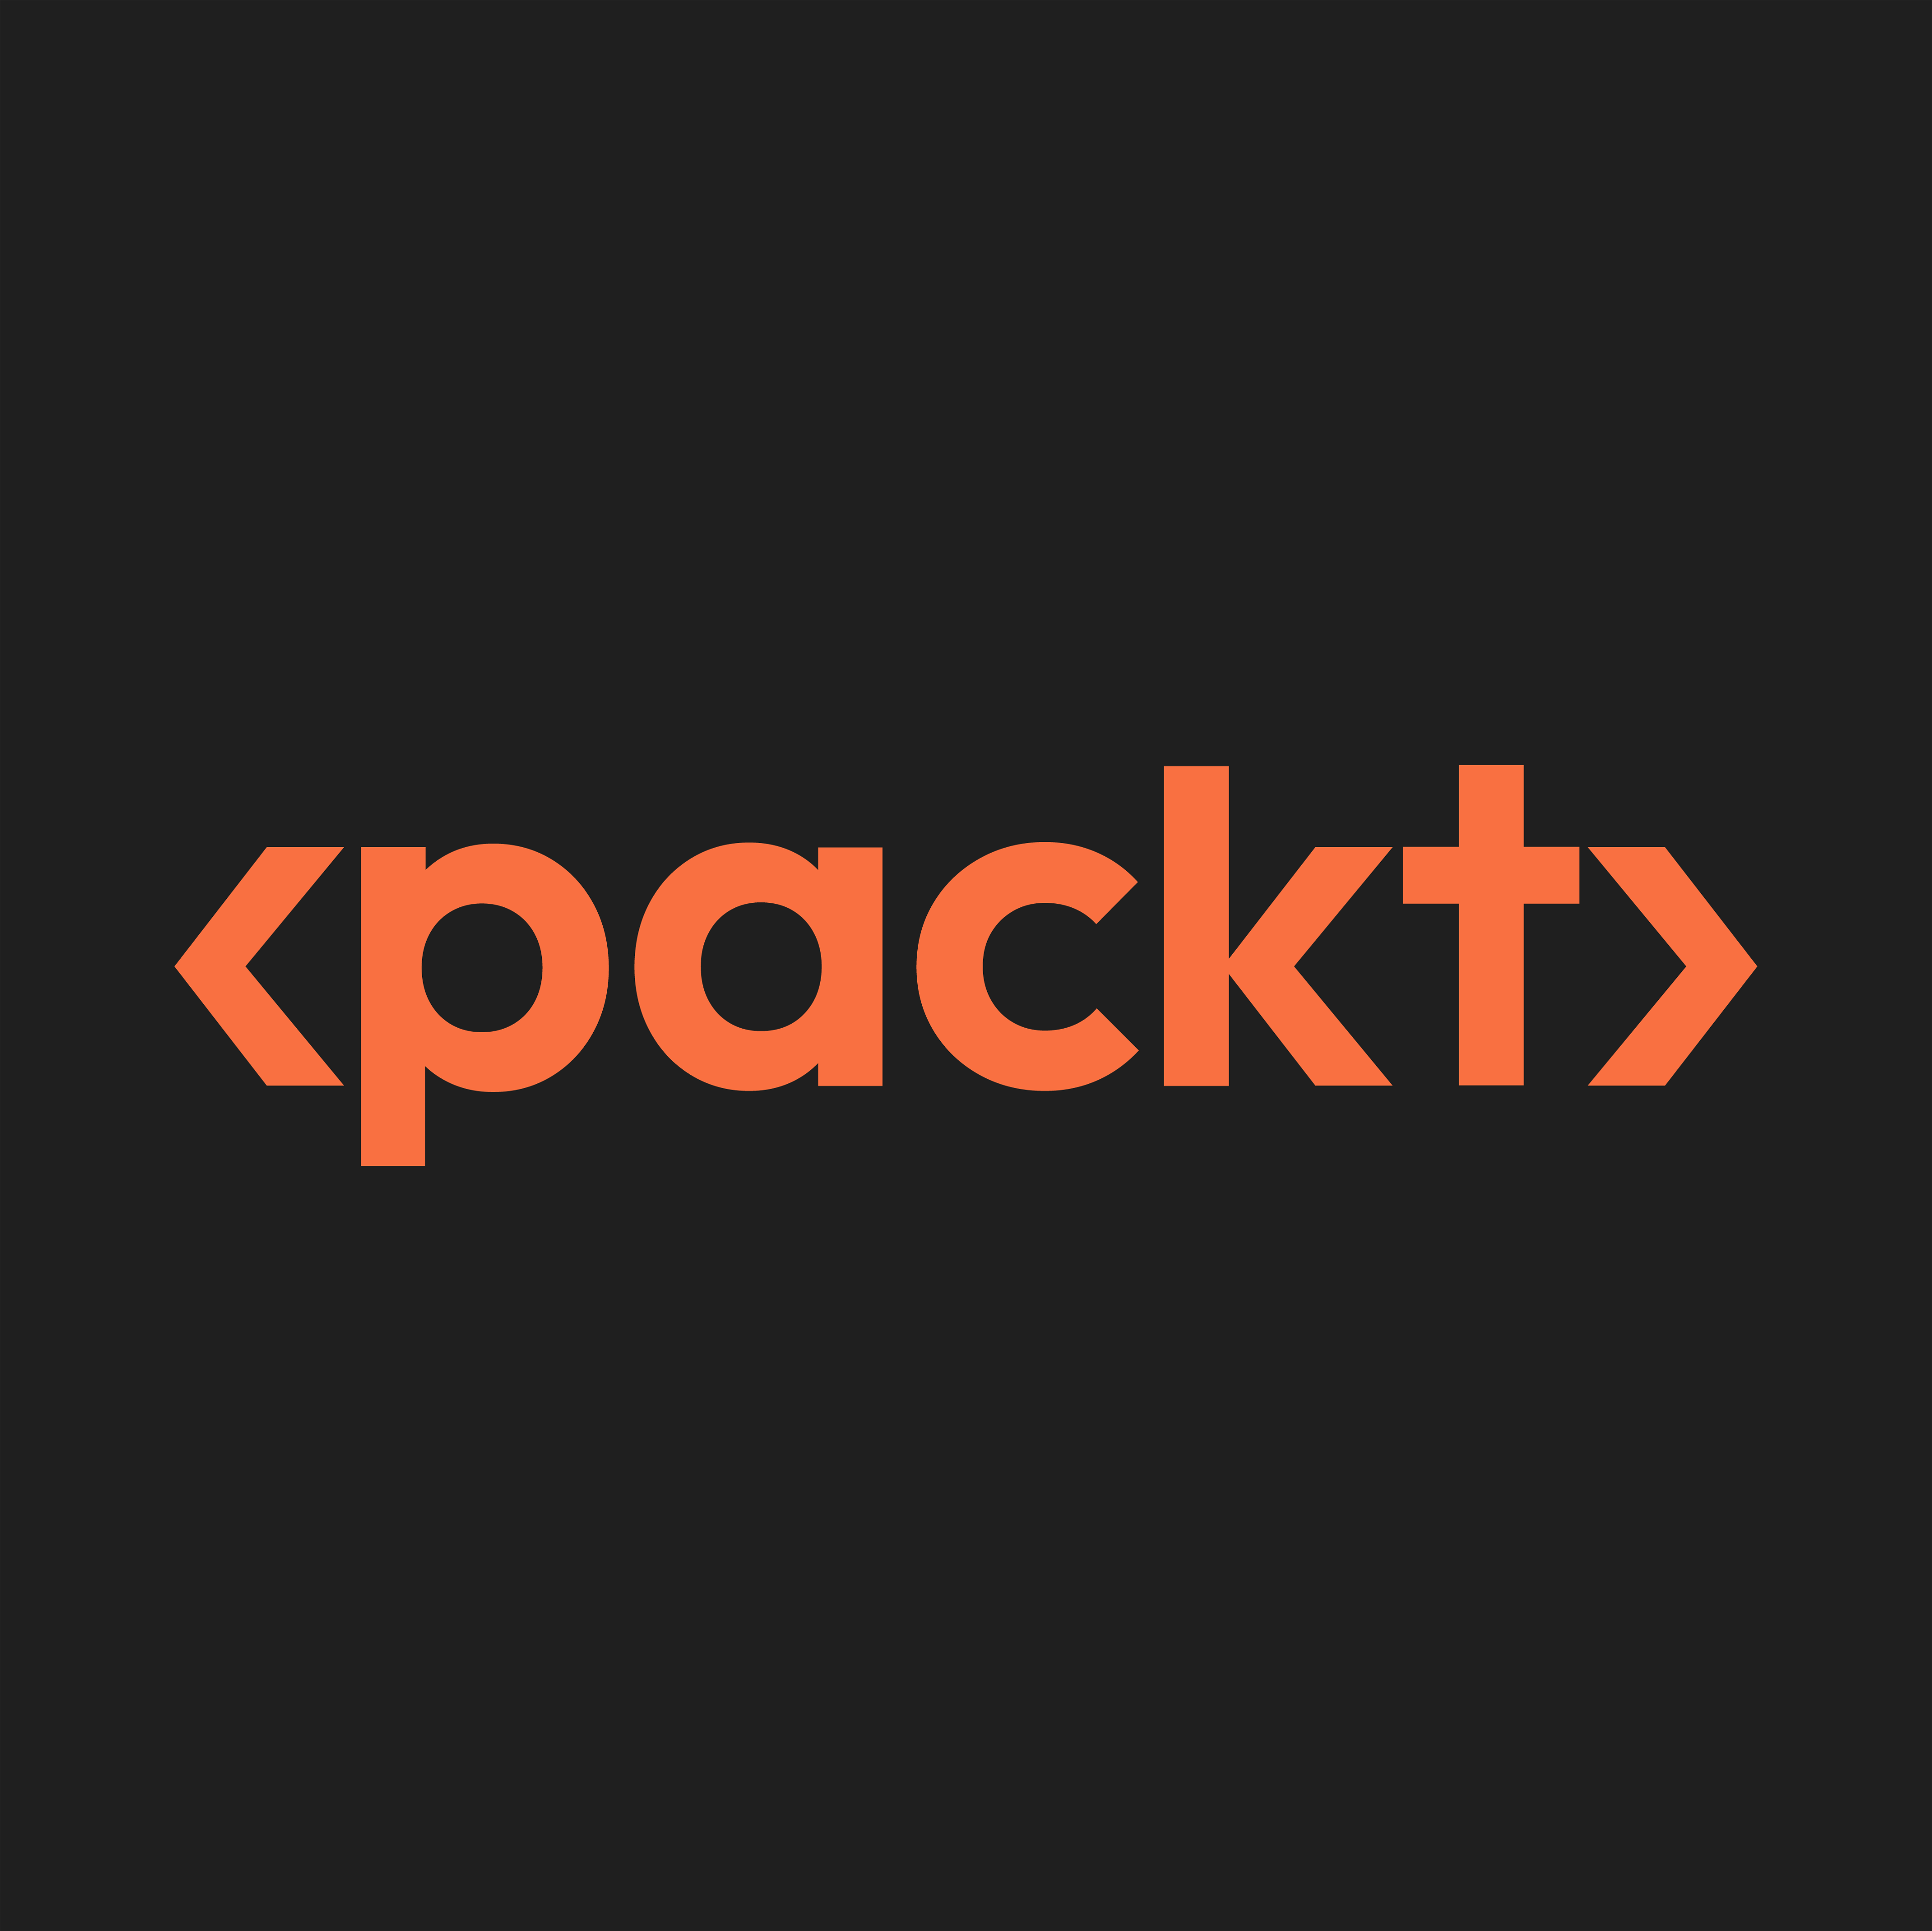 Packt logo